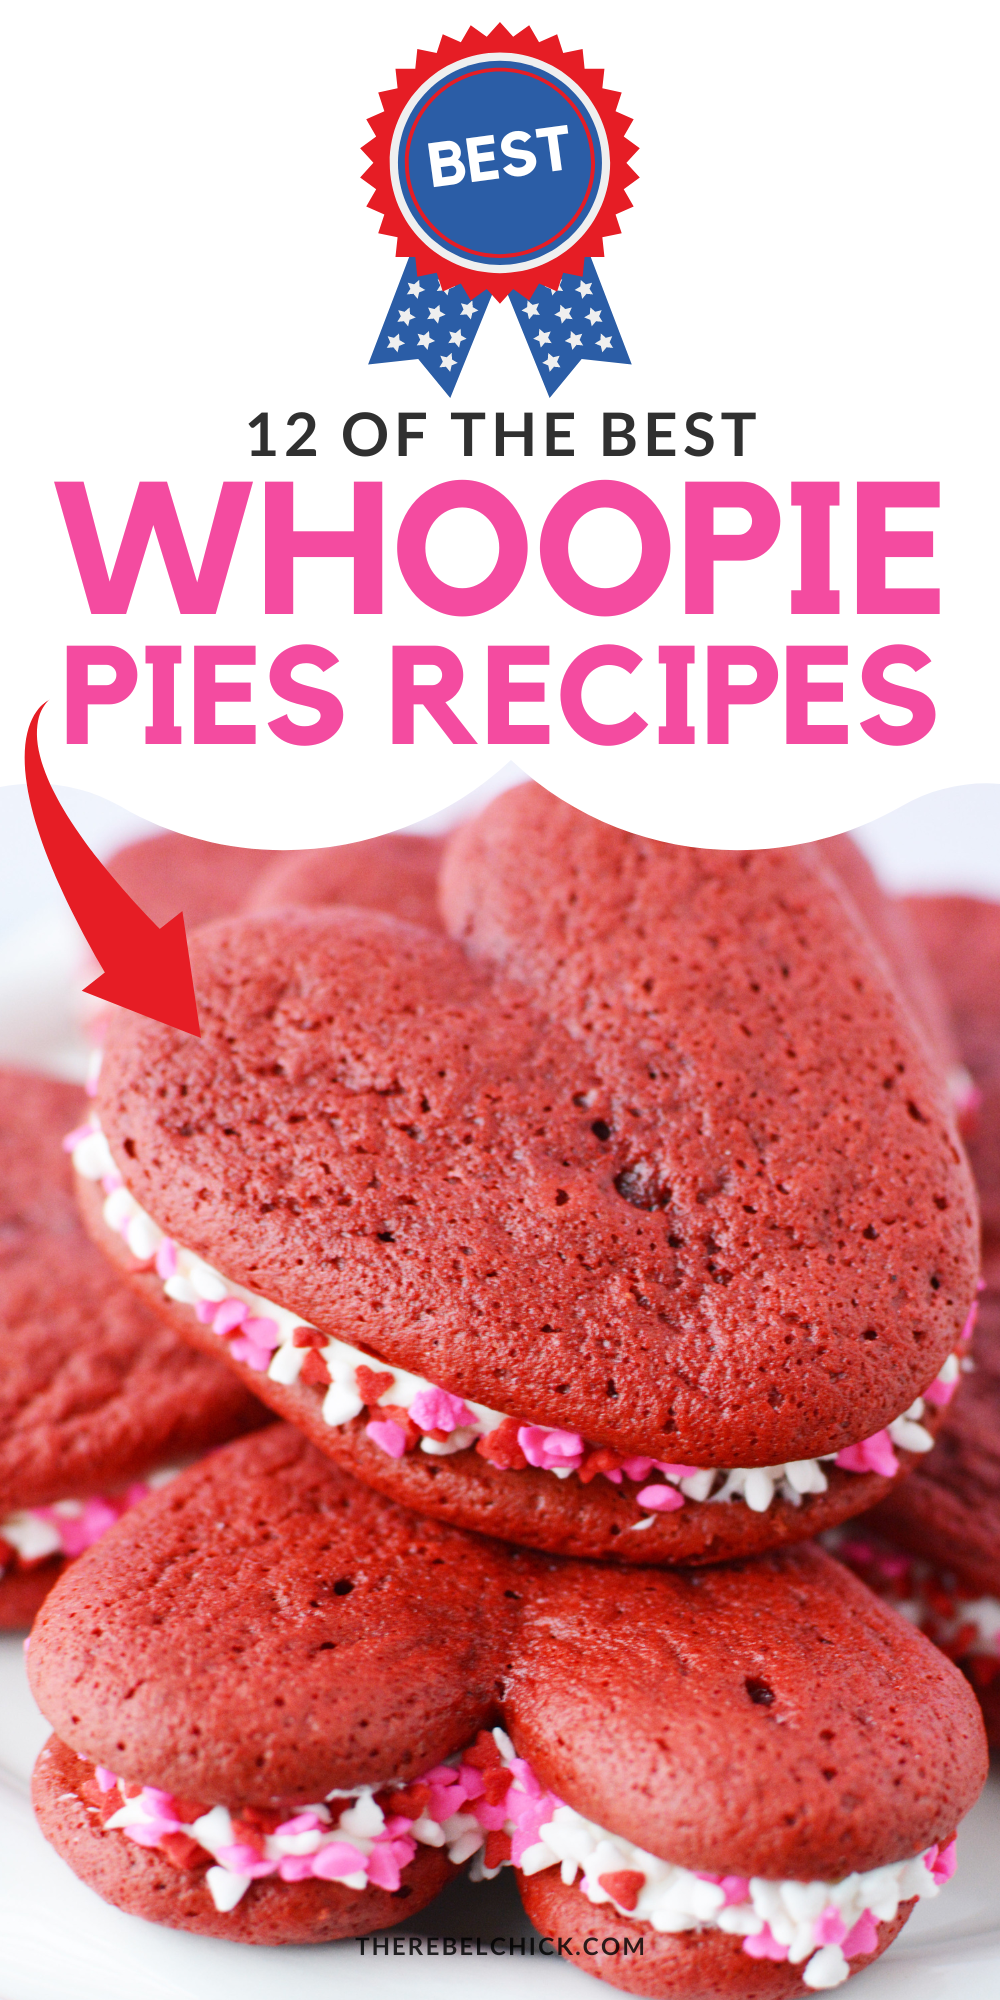 12 Wonderful Whoopie Pie Recipes